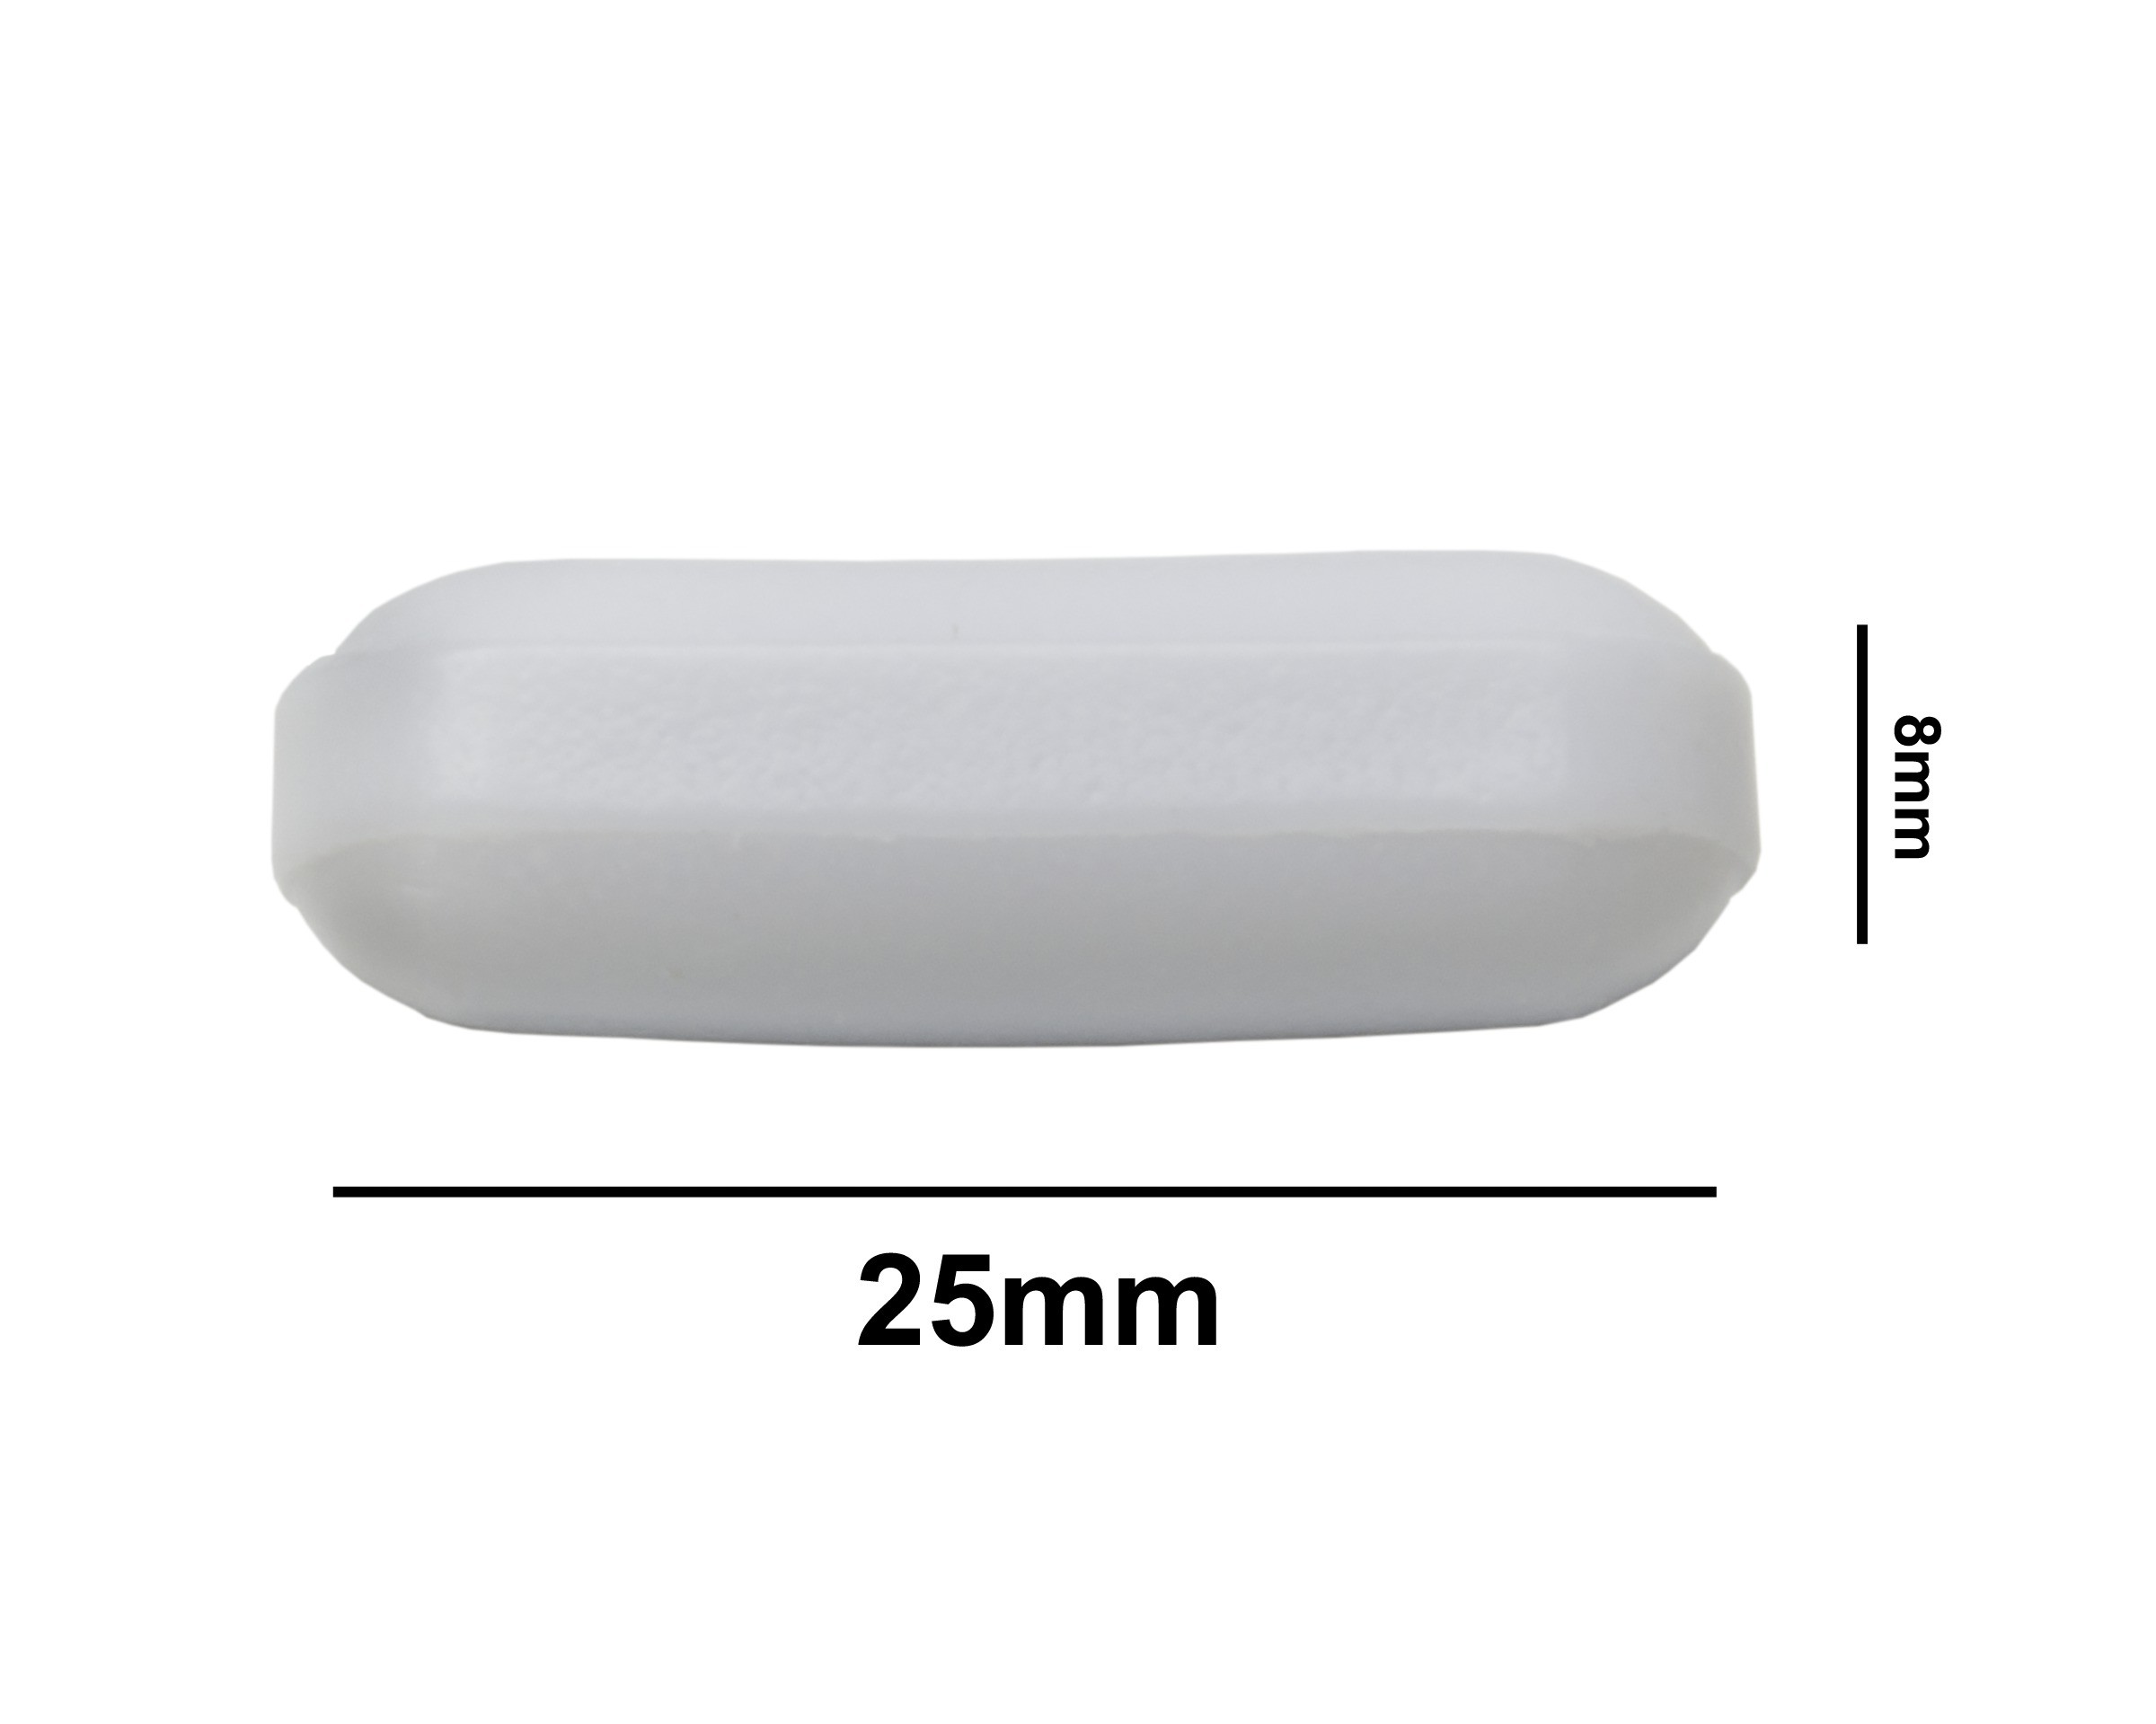 SP Bel-Art Spinbar Teflon Polygon Magnetic Stirring Bar; 25 x 8mm, White, without Pivot Ring